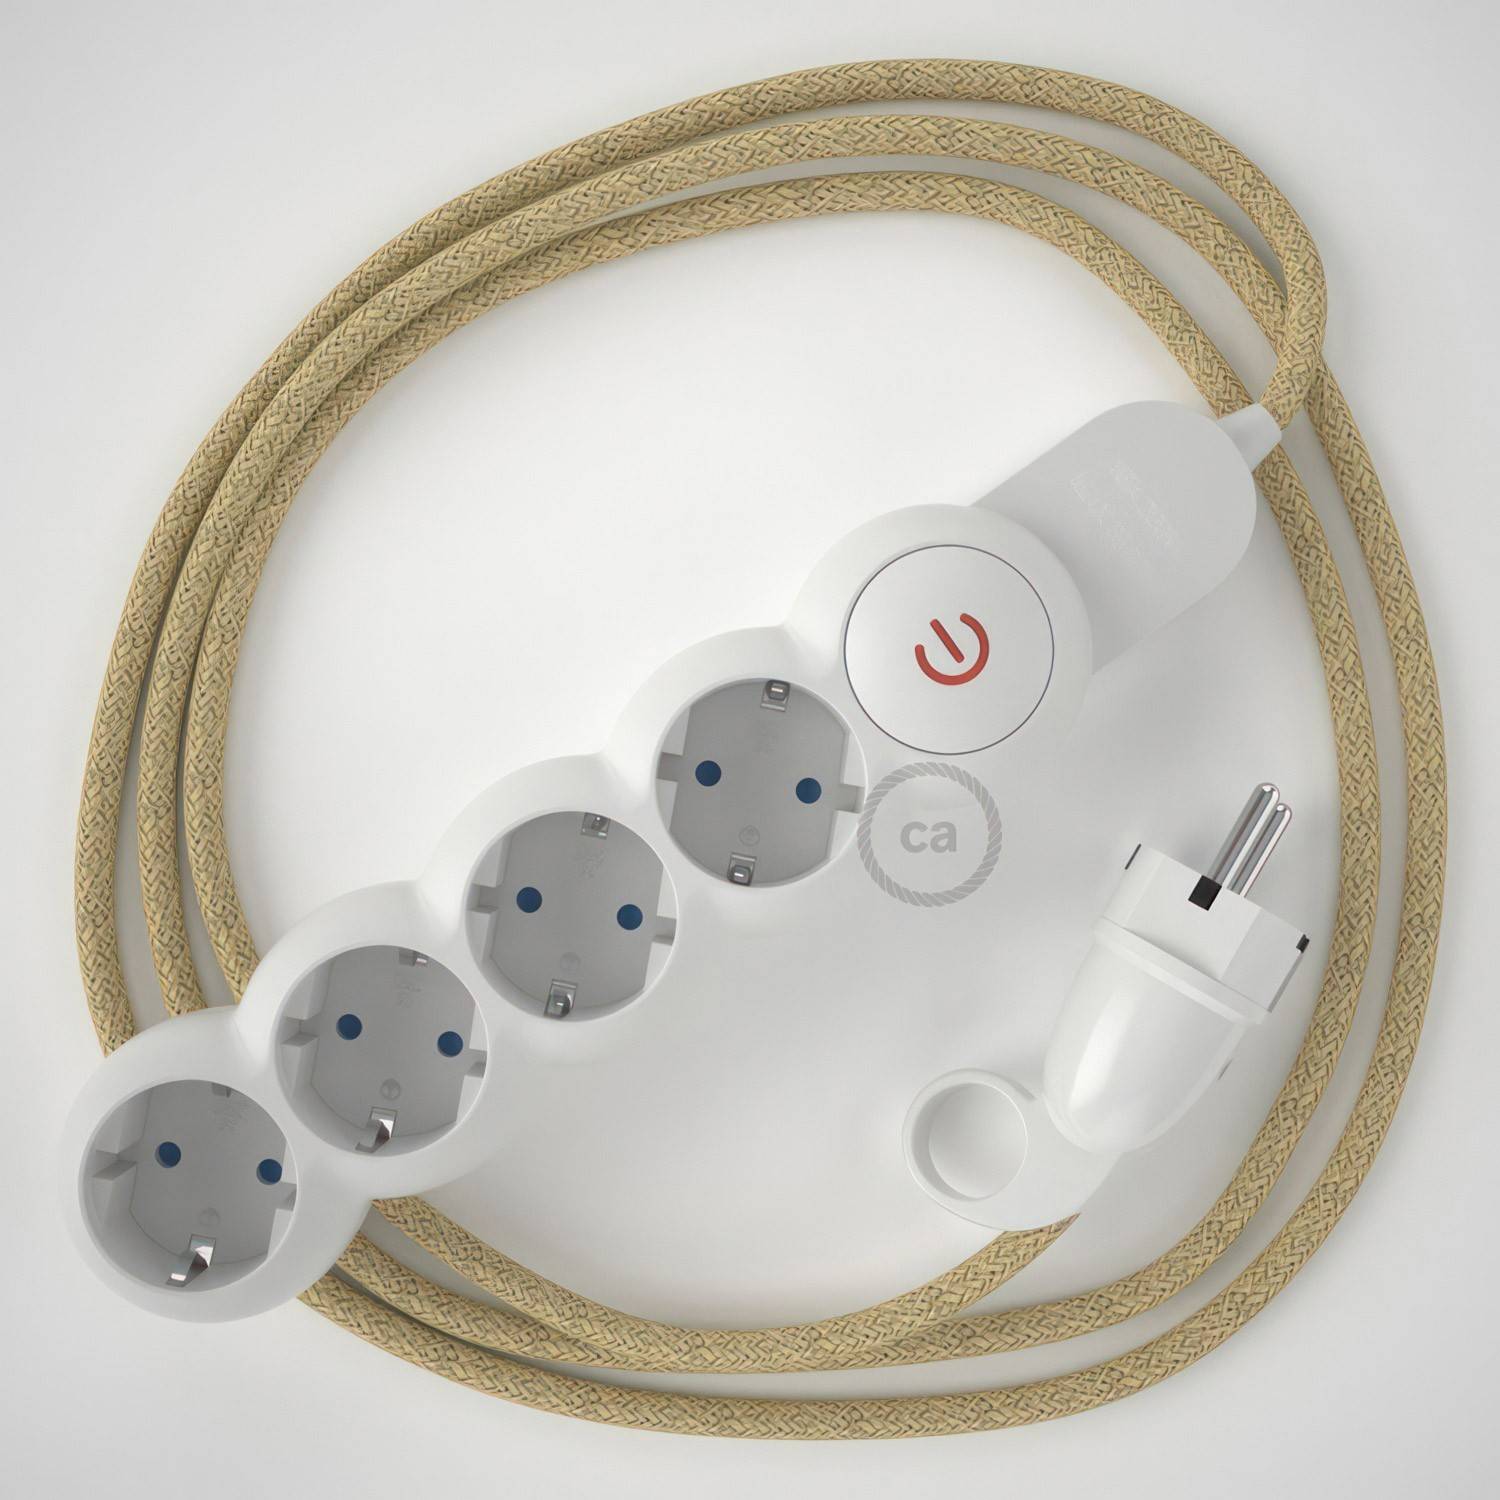 Fază de alimentare cu cablu electric acoperit cu jută RN06 și mufă Schuko cu inel de confort.